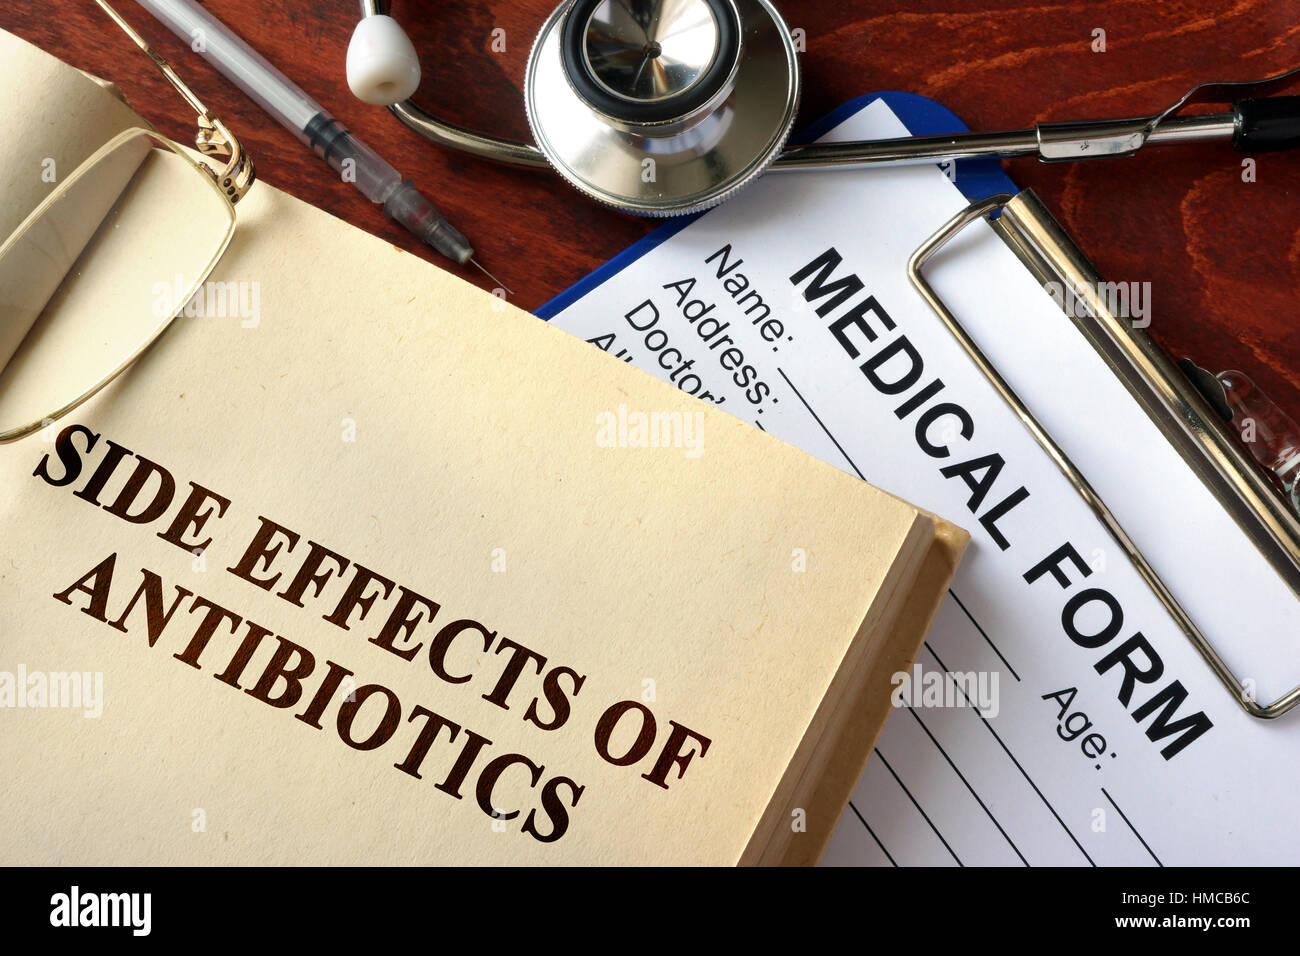 Título los efectos secundarios de los antibióticos en un libro. Foto de stock